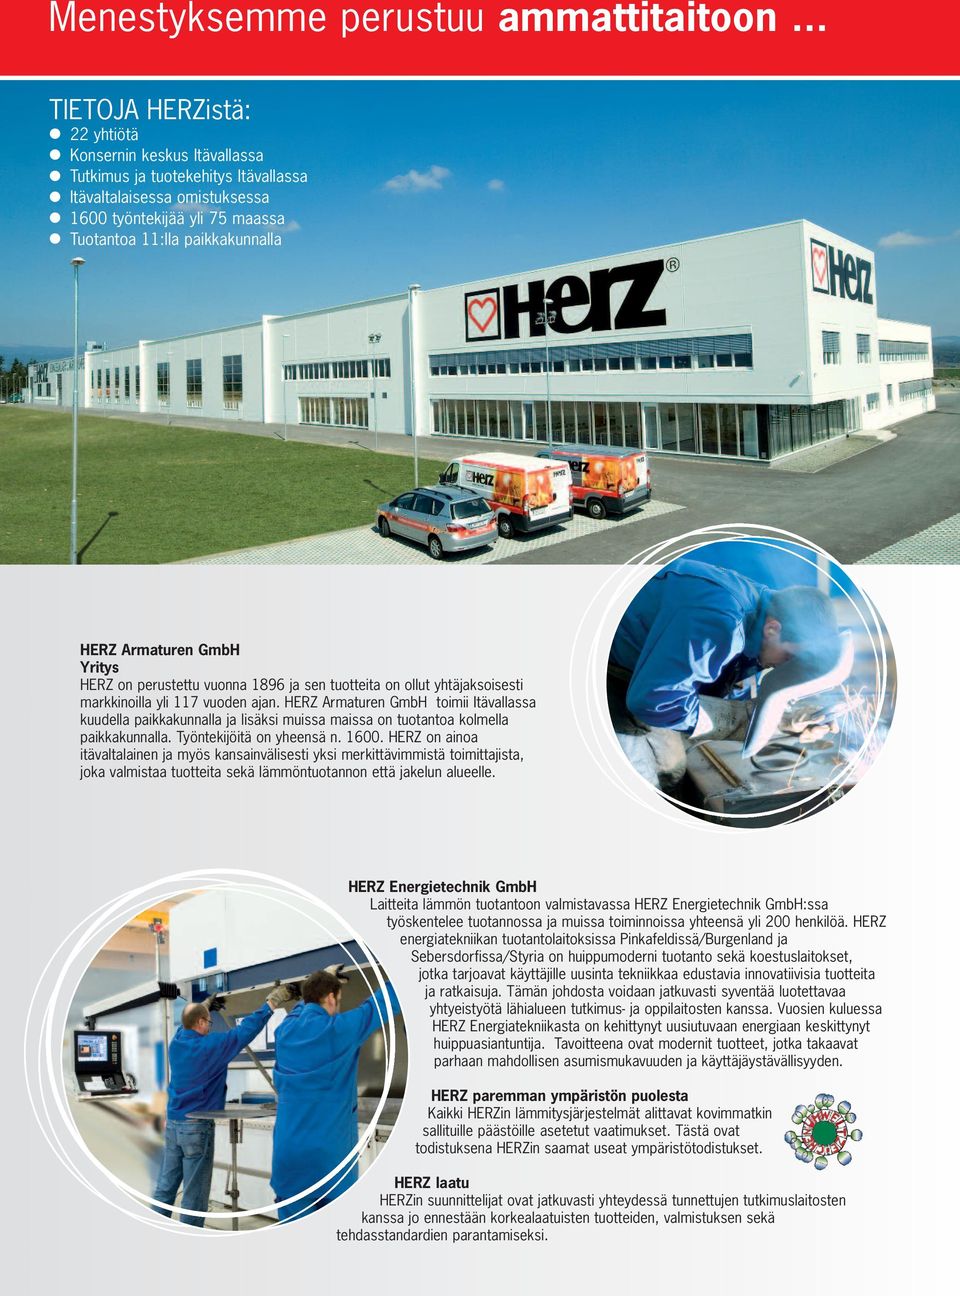 Armaturen GmbH Yritys HERZ on perustettu vuonna 1896 ja sen tuotteita on ollut yhtäjaksoisesti markkinoilla yli 117 vuoden ajan.